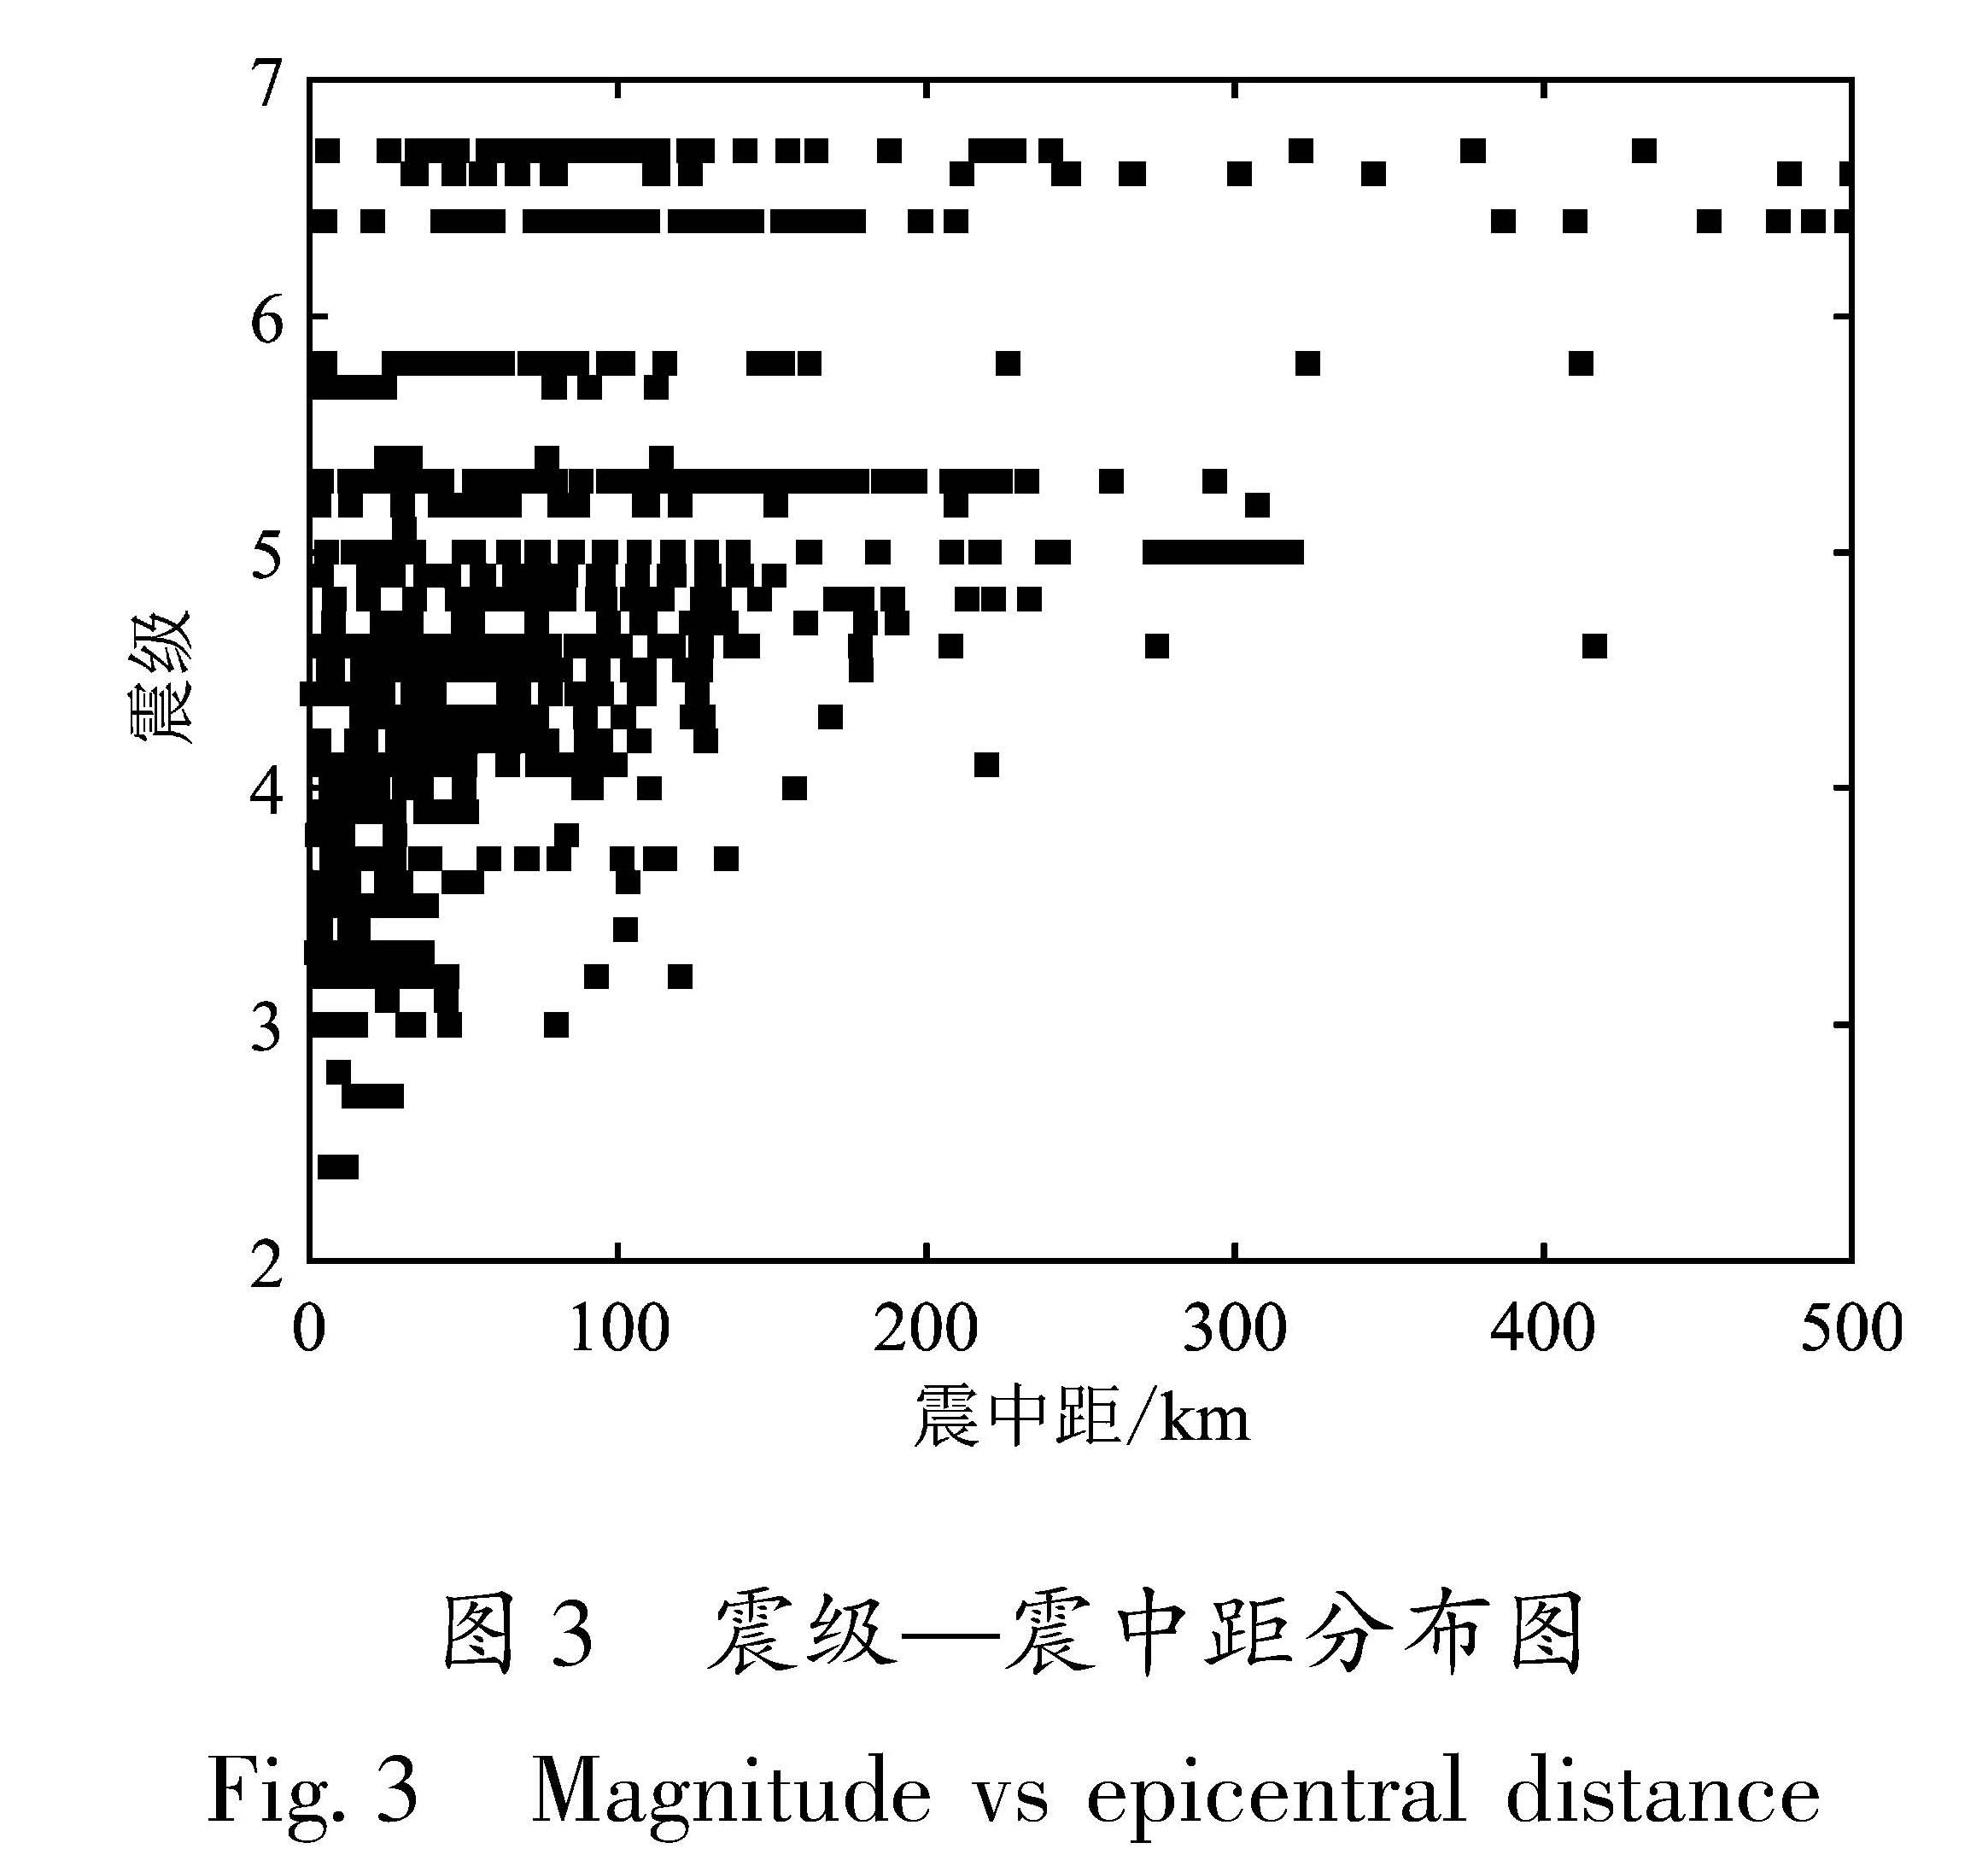 图3 震级—震中距分布图<br/>Fig.3 Magnitude vs epicentral distance